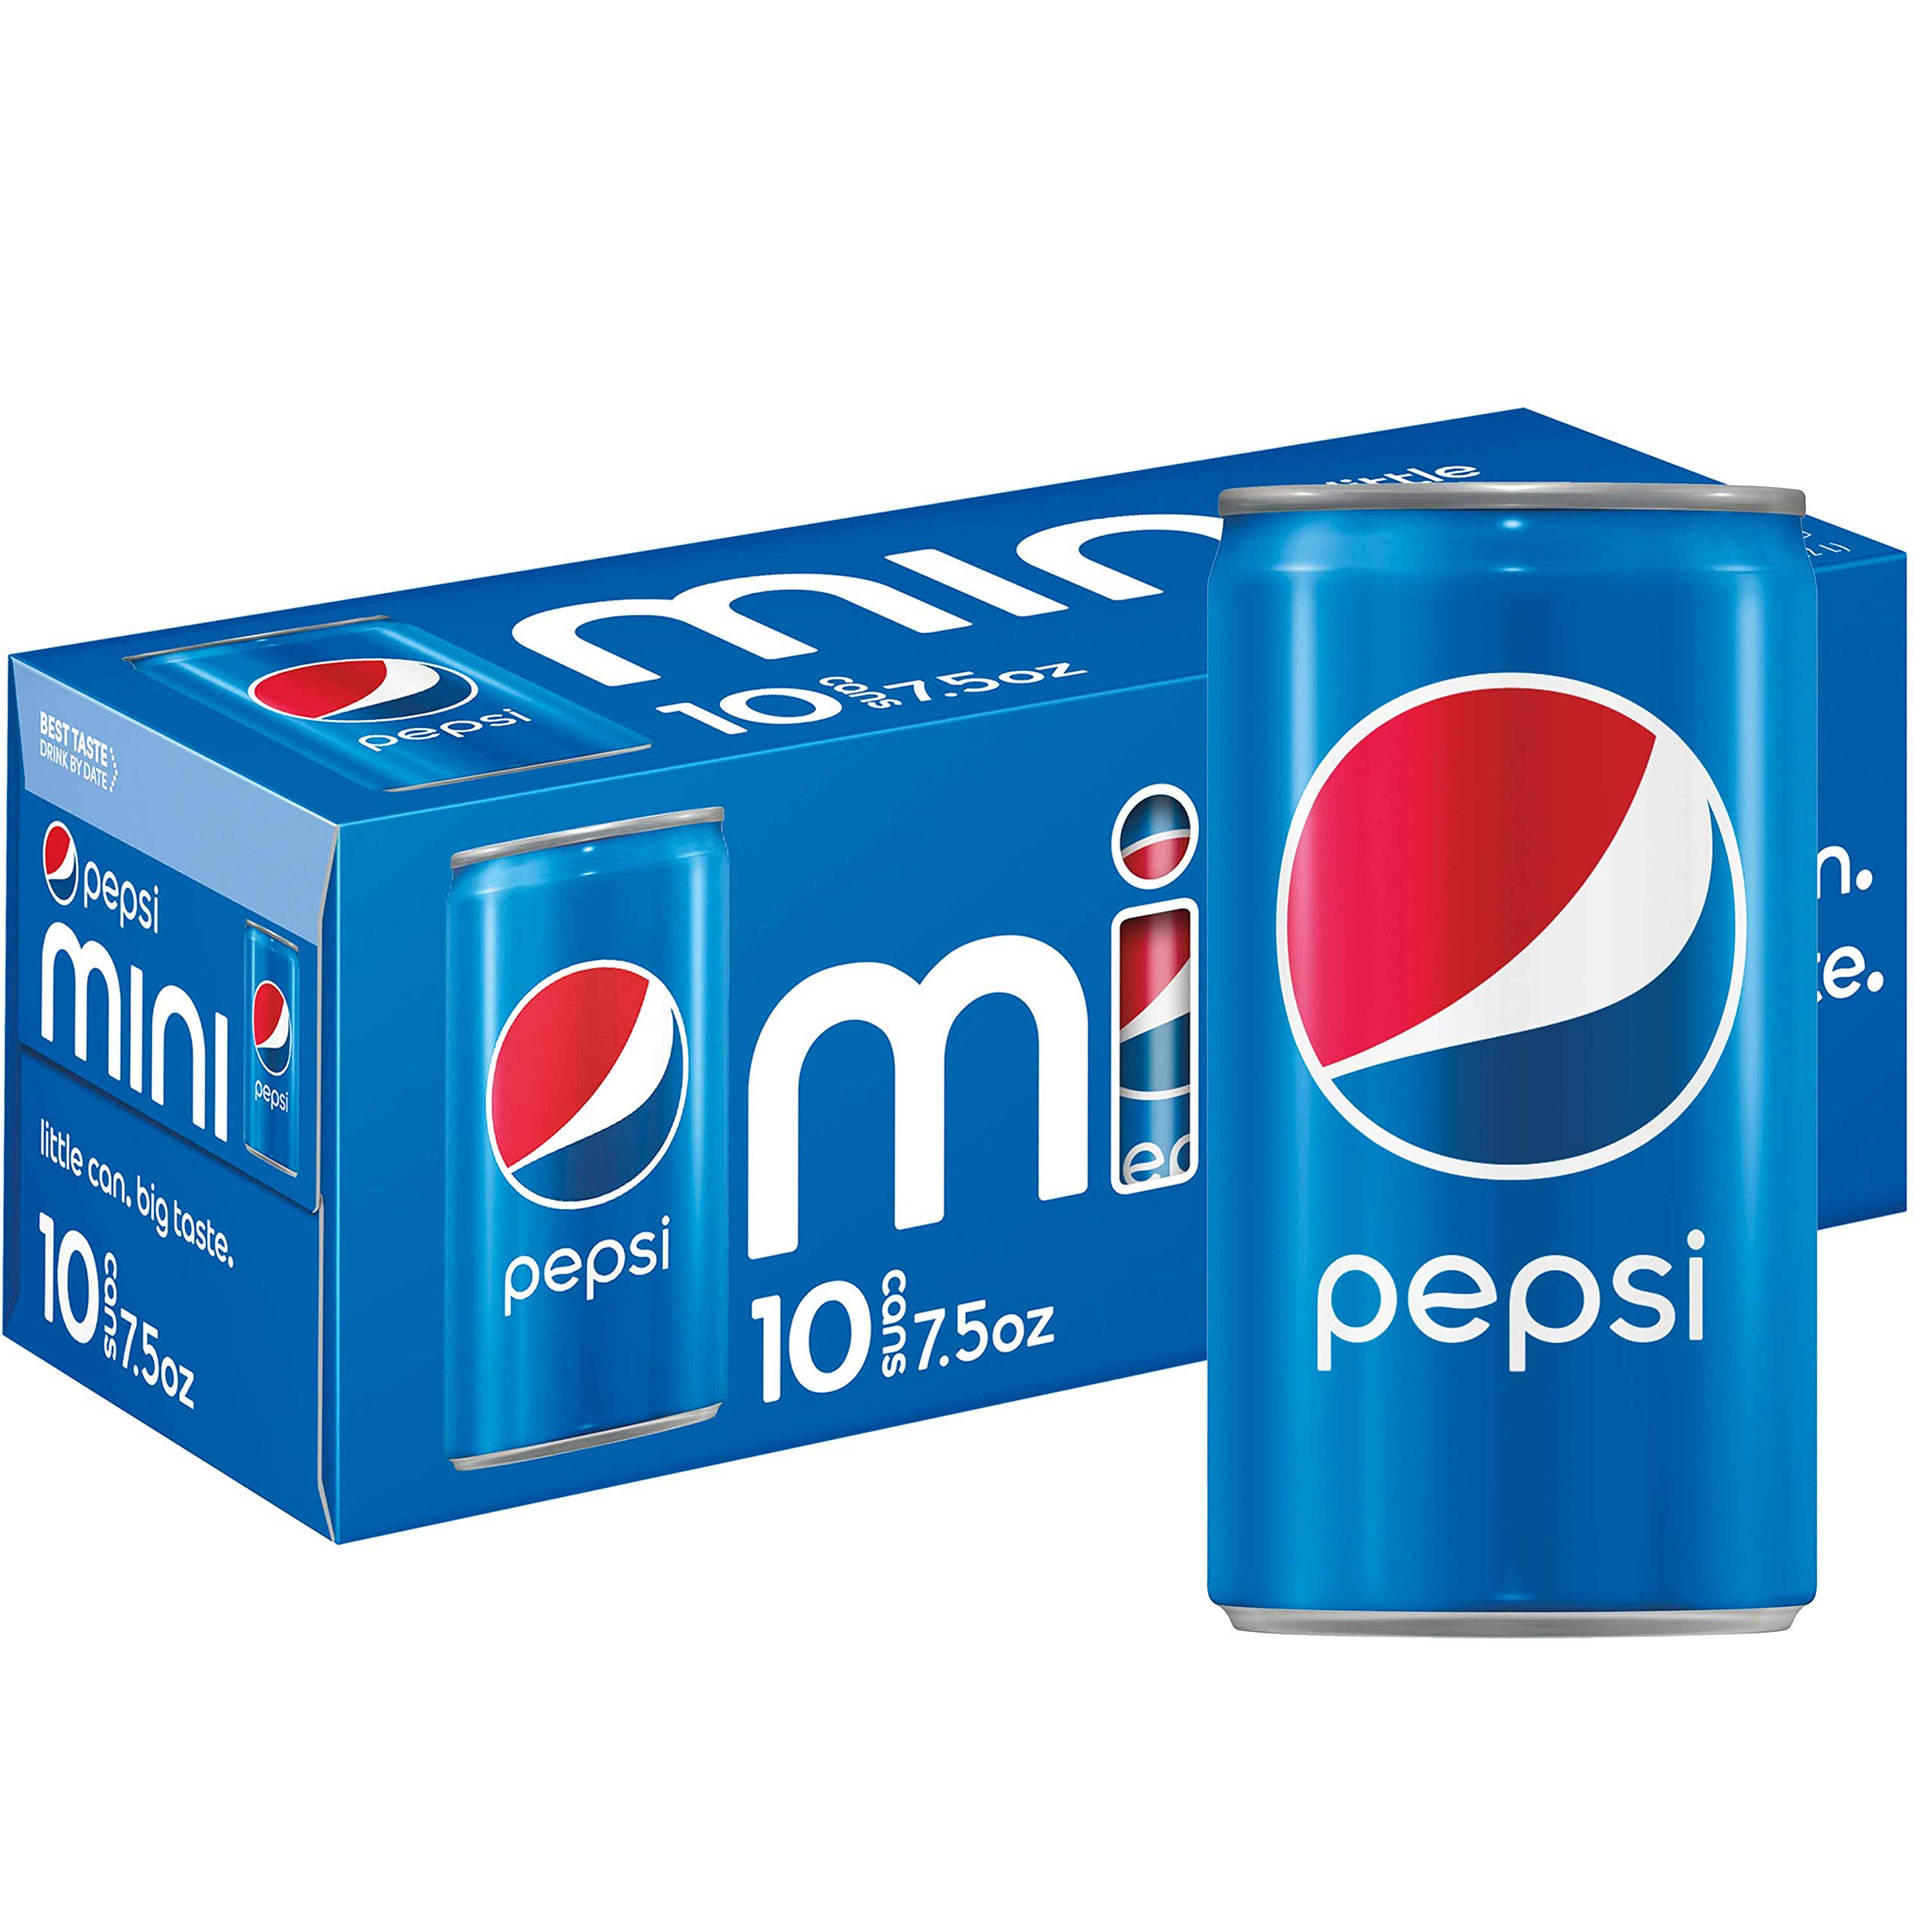 Speichernsie A Lot Lebensmittelgeschäft Diet Pepsi Cola Wallpaper